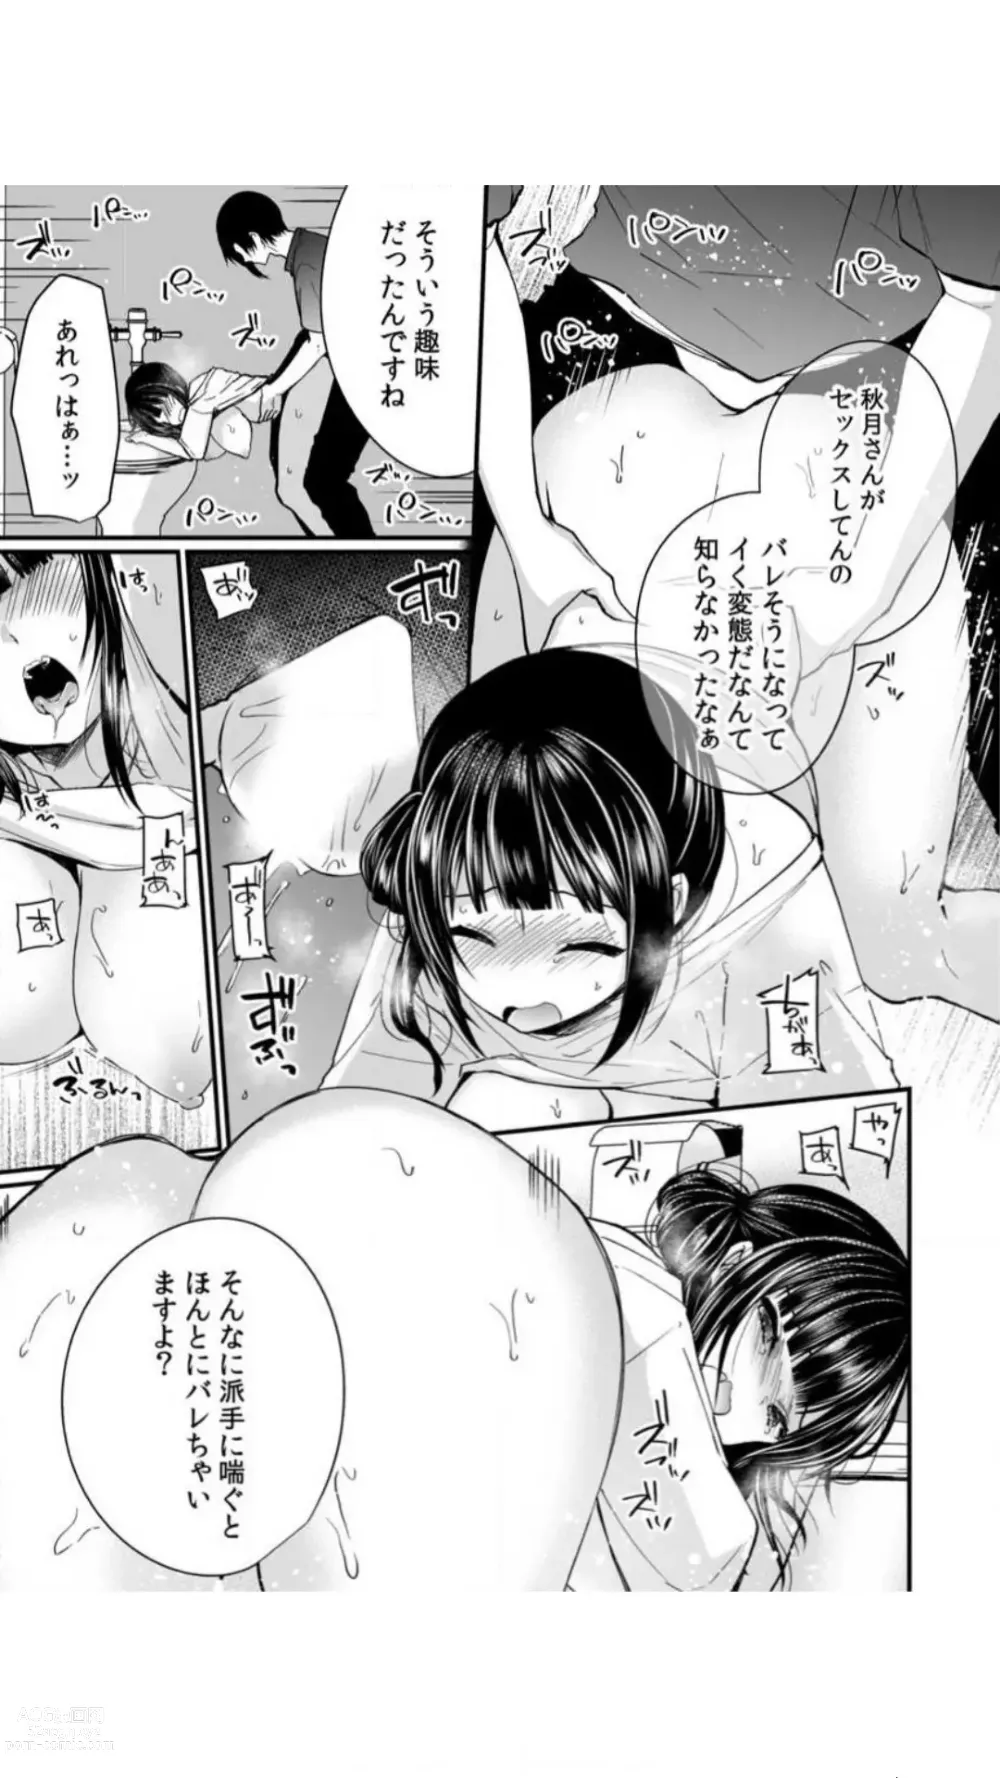 Page 95 of manga Ikasare Sugite Chousa Muri... Sennyuu! Uwasa no Kaikan Massage-ten